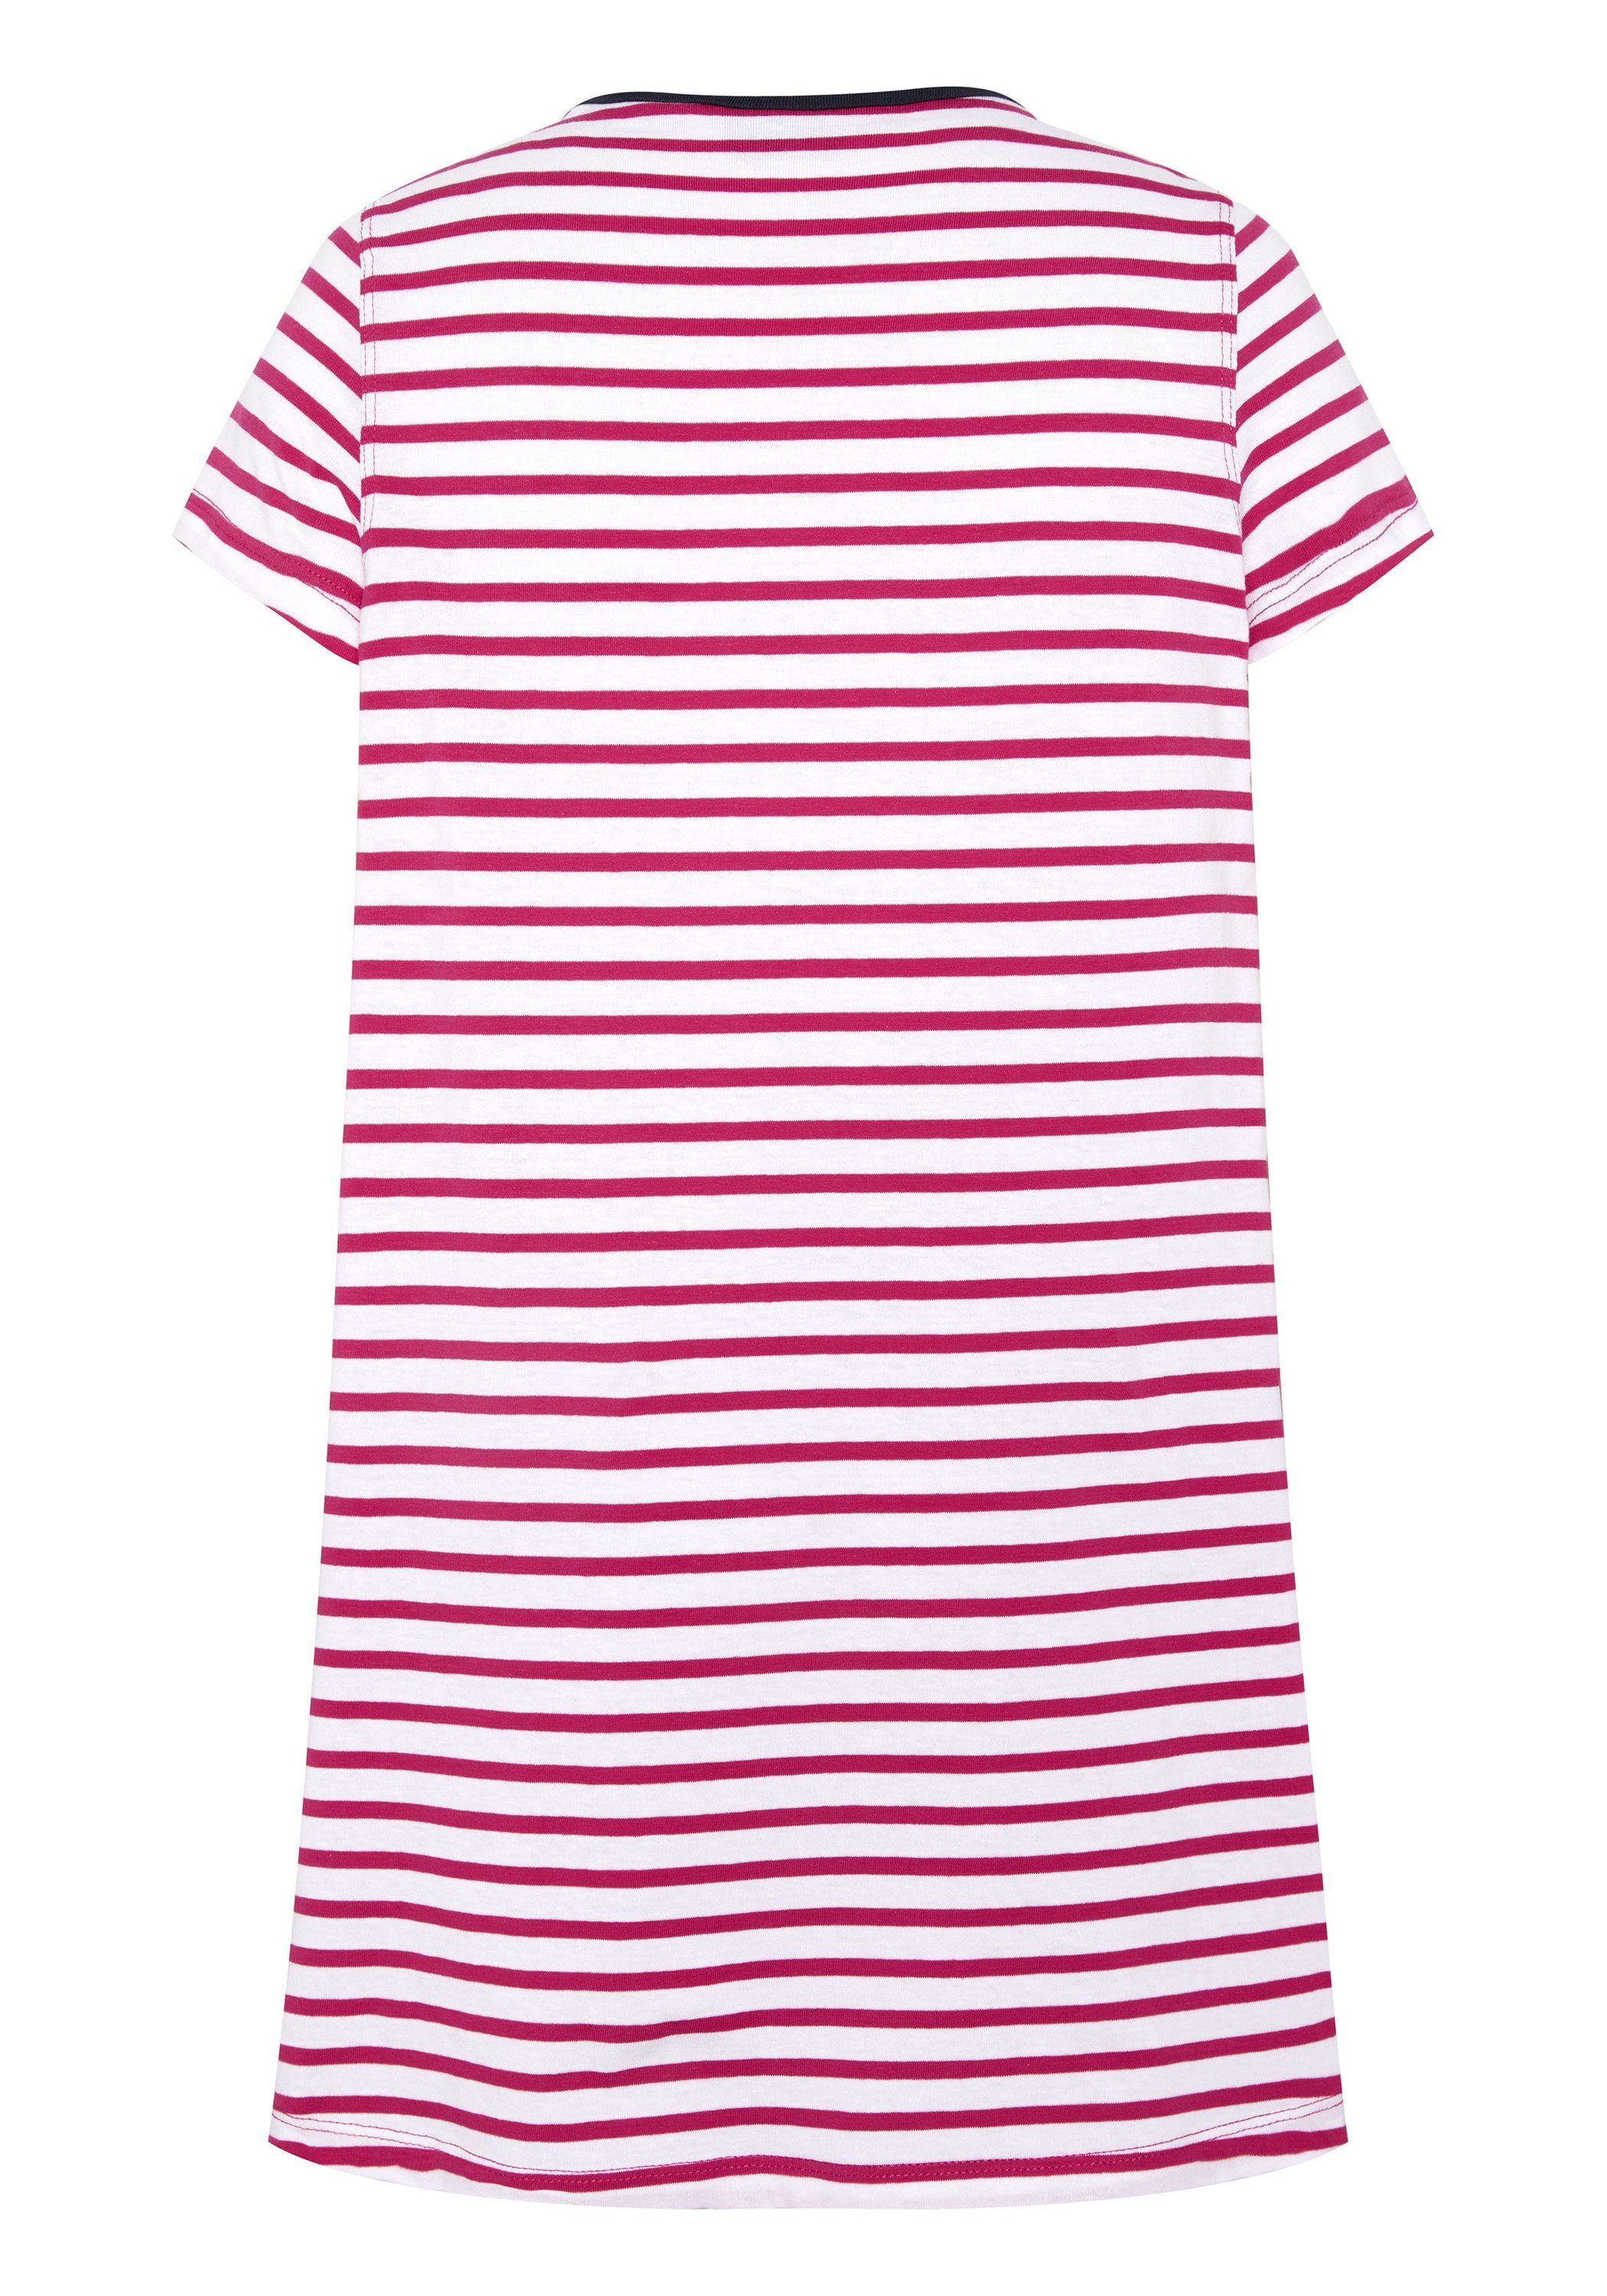 Polo Sylt Jerseykleid im 2910 Pink/White Design Streifen